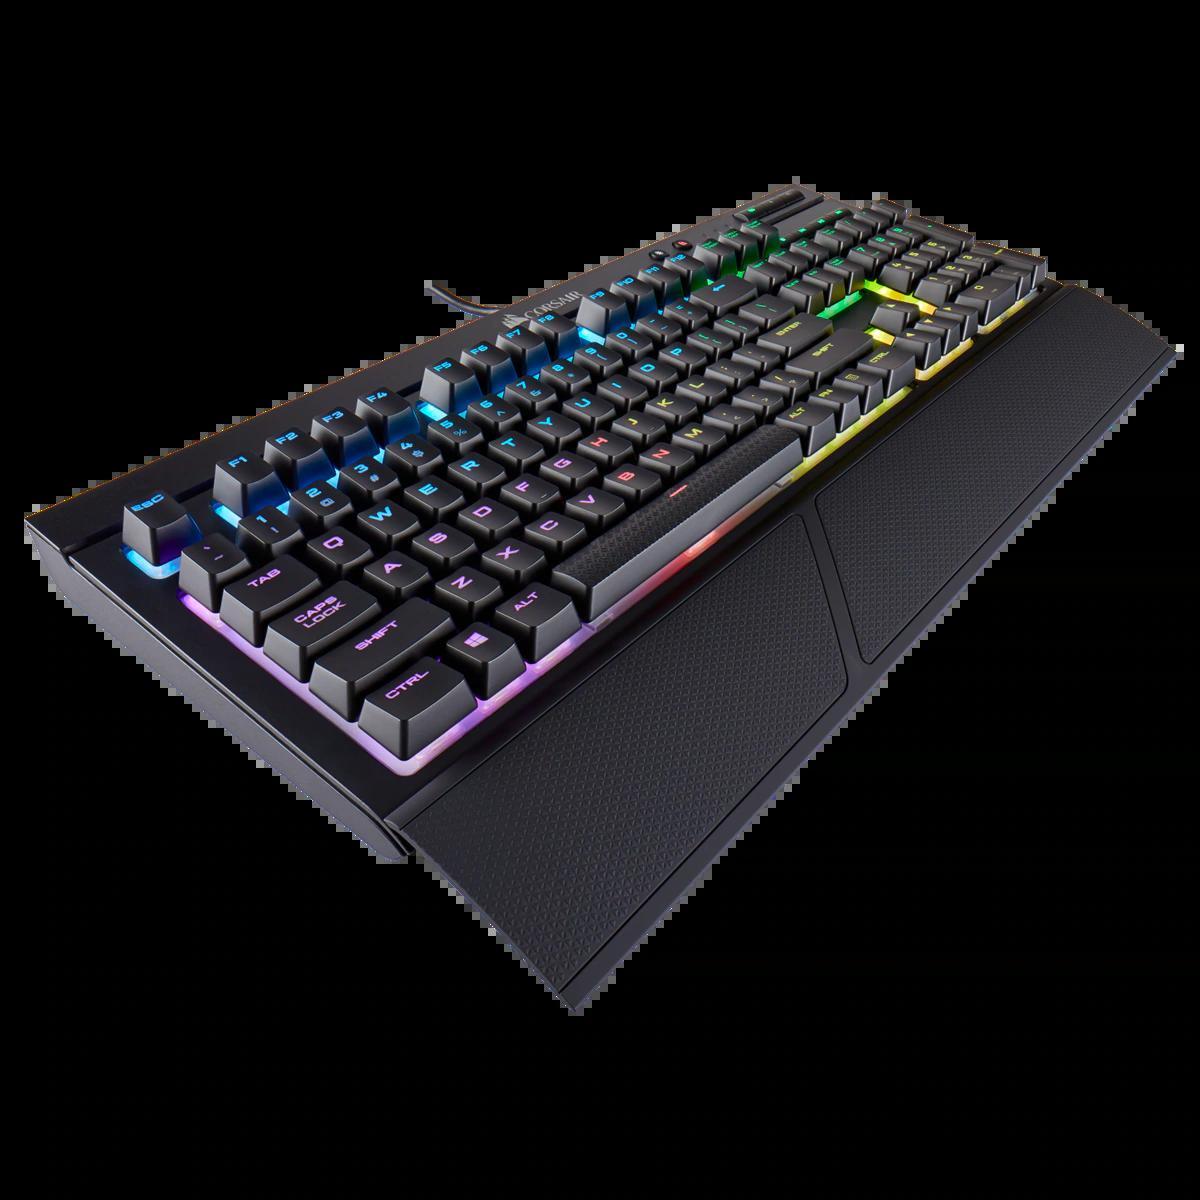 Bàn phím - Keyboard Corsair K68 RGB